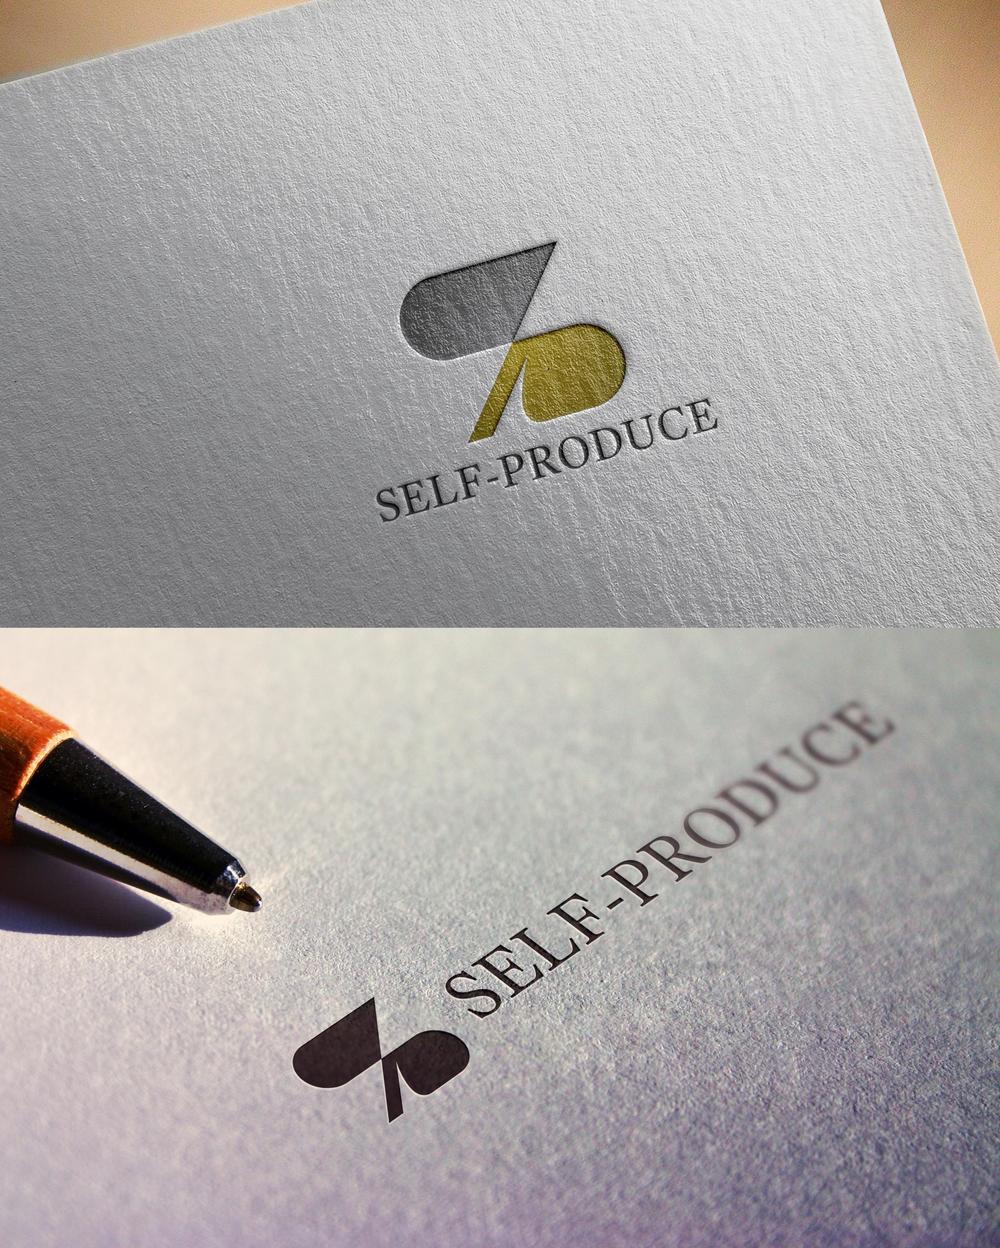 会社のロゴ「株式会社SELF-PRODUCE」